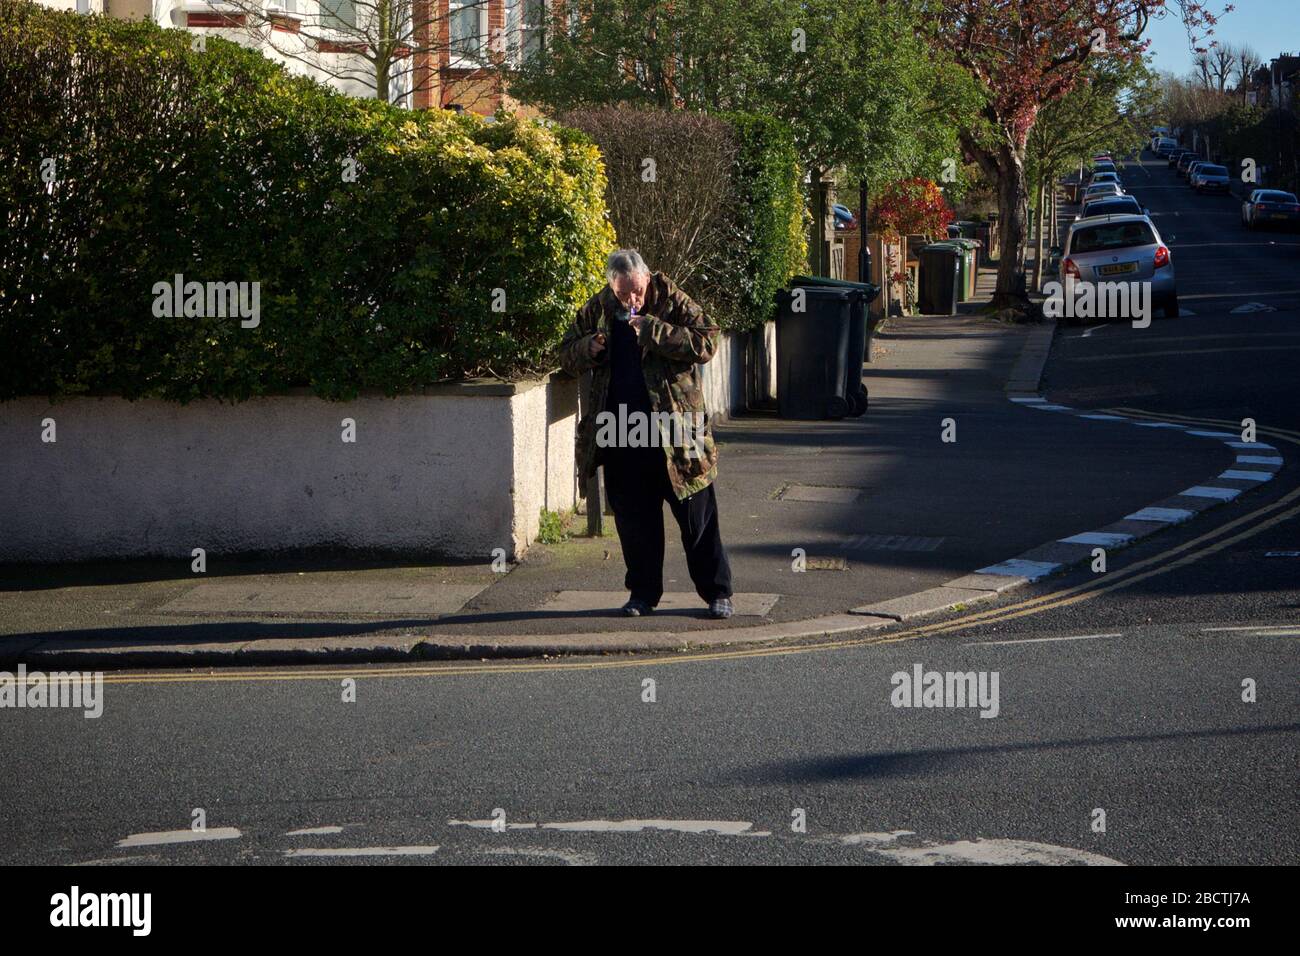 Londres, Royaume-Uni. Coronavirus. Un homme semble fumer ouvertement de crack cocaïne au coin des rues résidentielles, principalement désolées, pendant le covid- 19 Banque D'Images